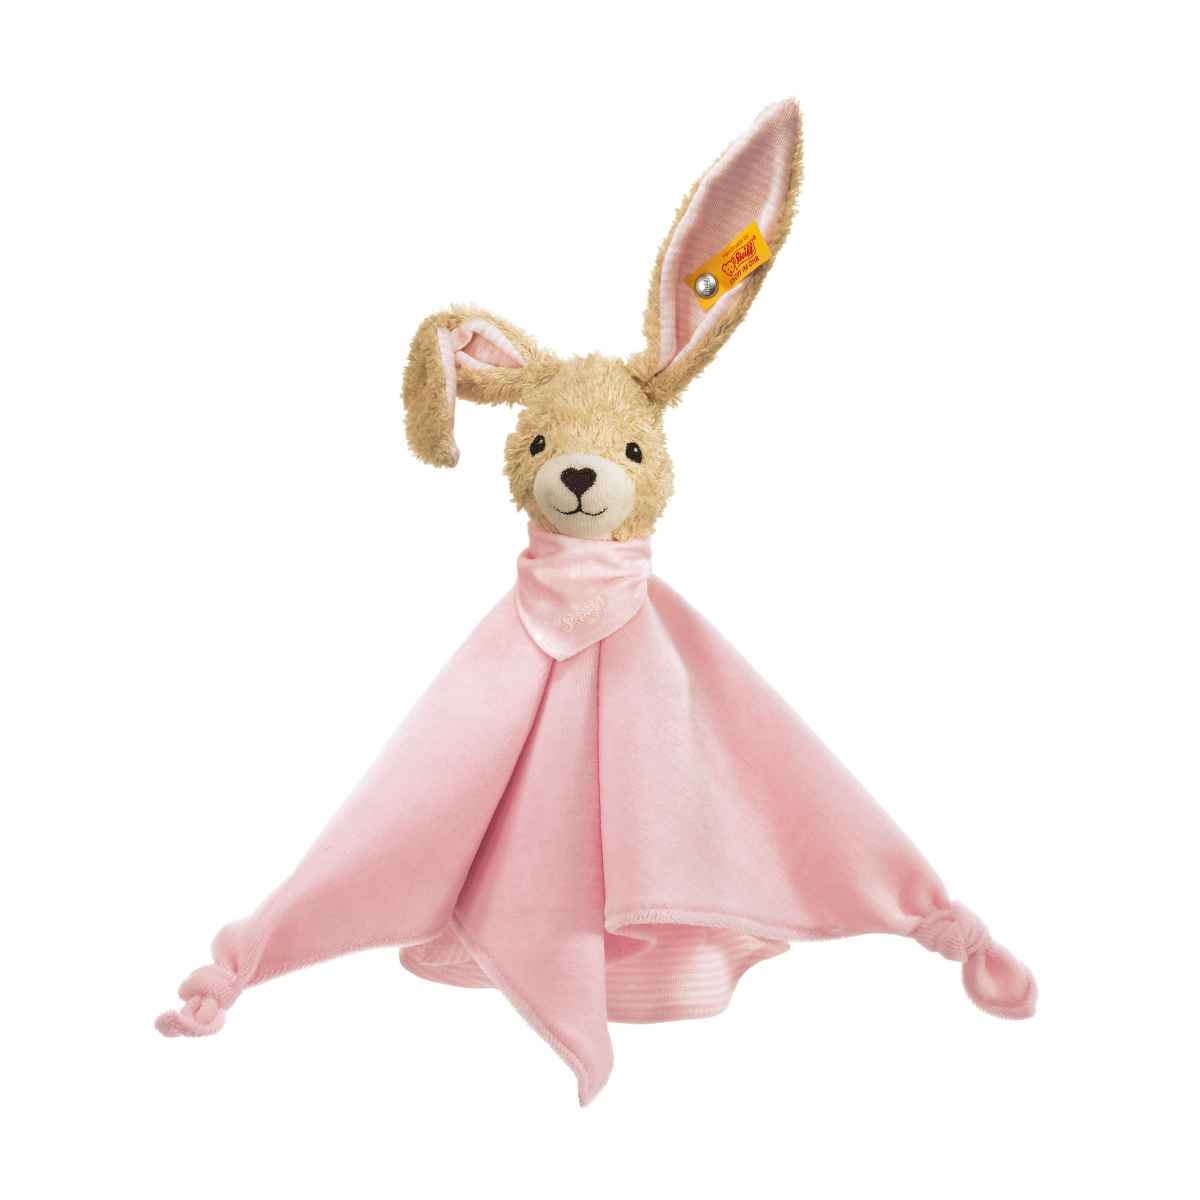 Комфортер для новорожденных Steiff Hoppel Rabbit pink Штайф Кролик Хоппель, розовый, 28 см комфортер kaloo lapinoo игрушка кролик 35 см